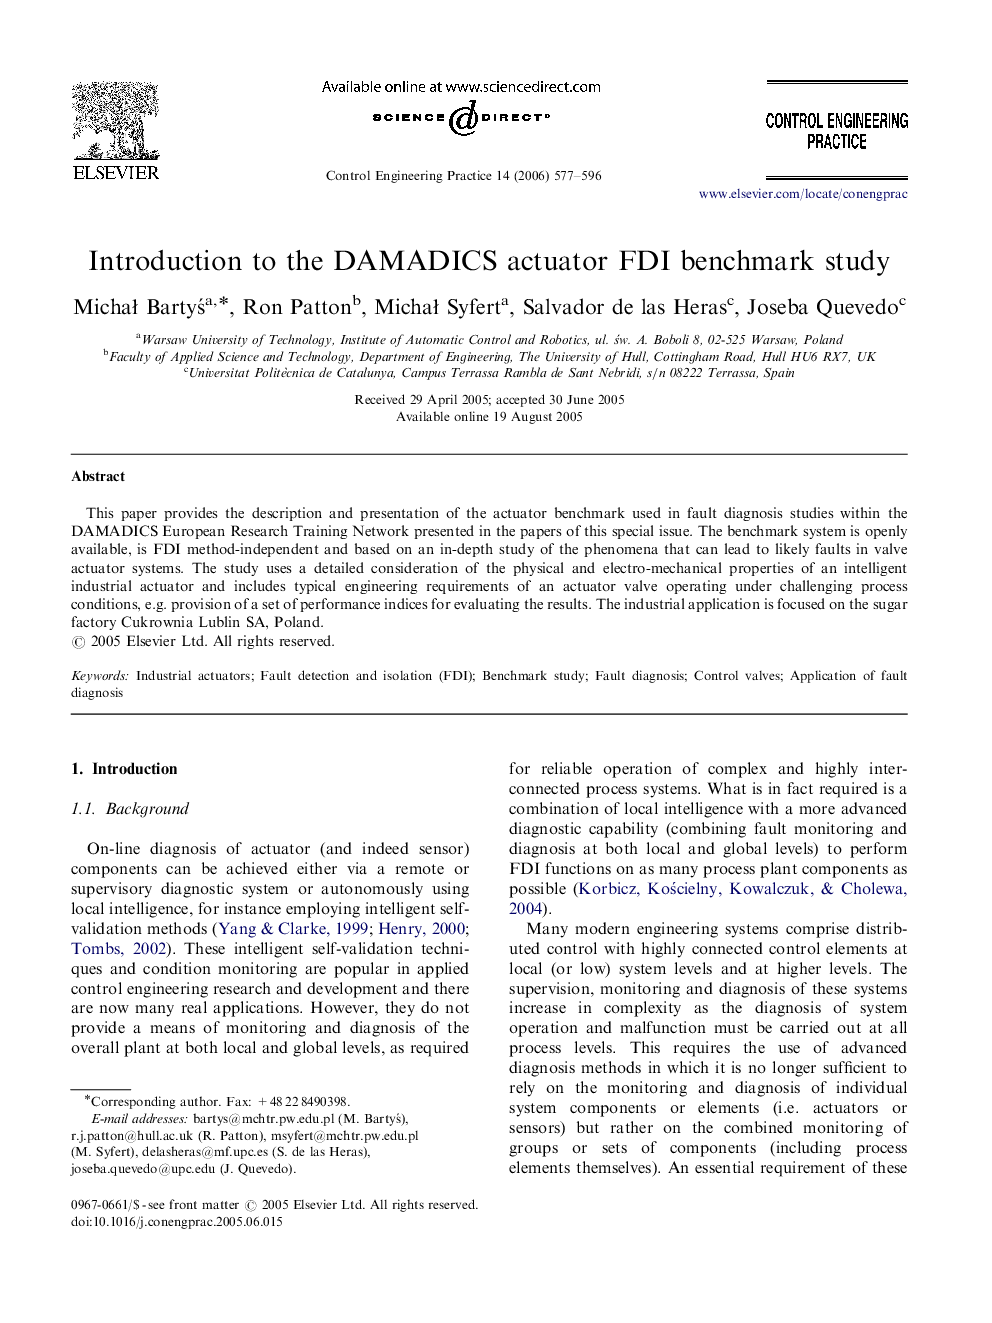 Introduction to the DAMADICS actuator FDI benchmark study